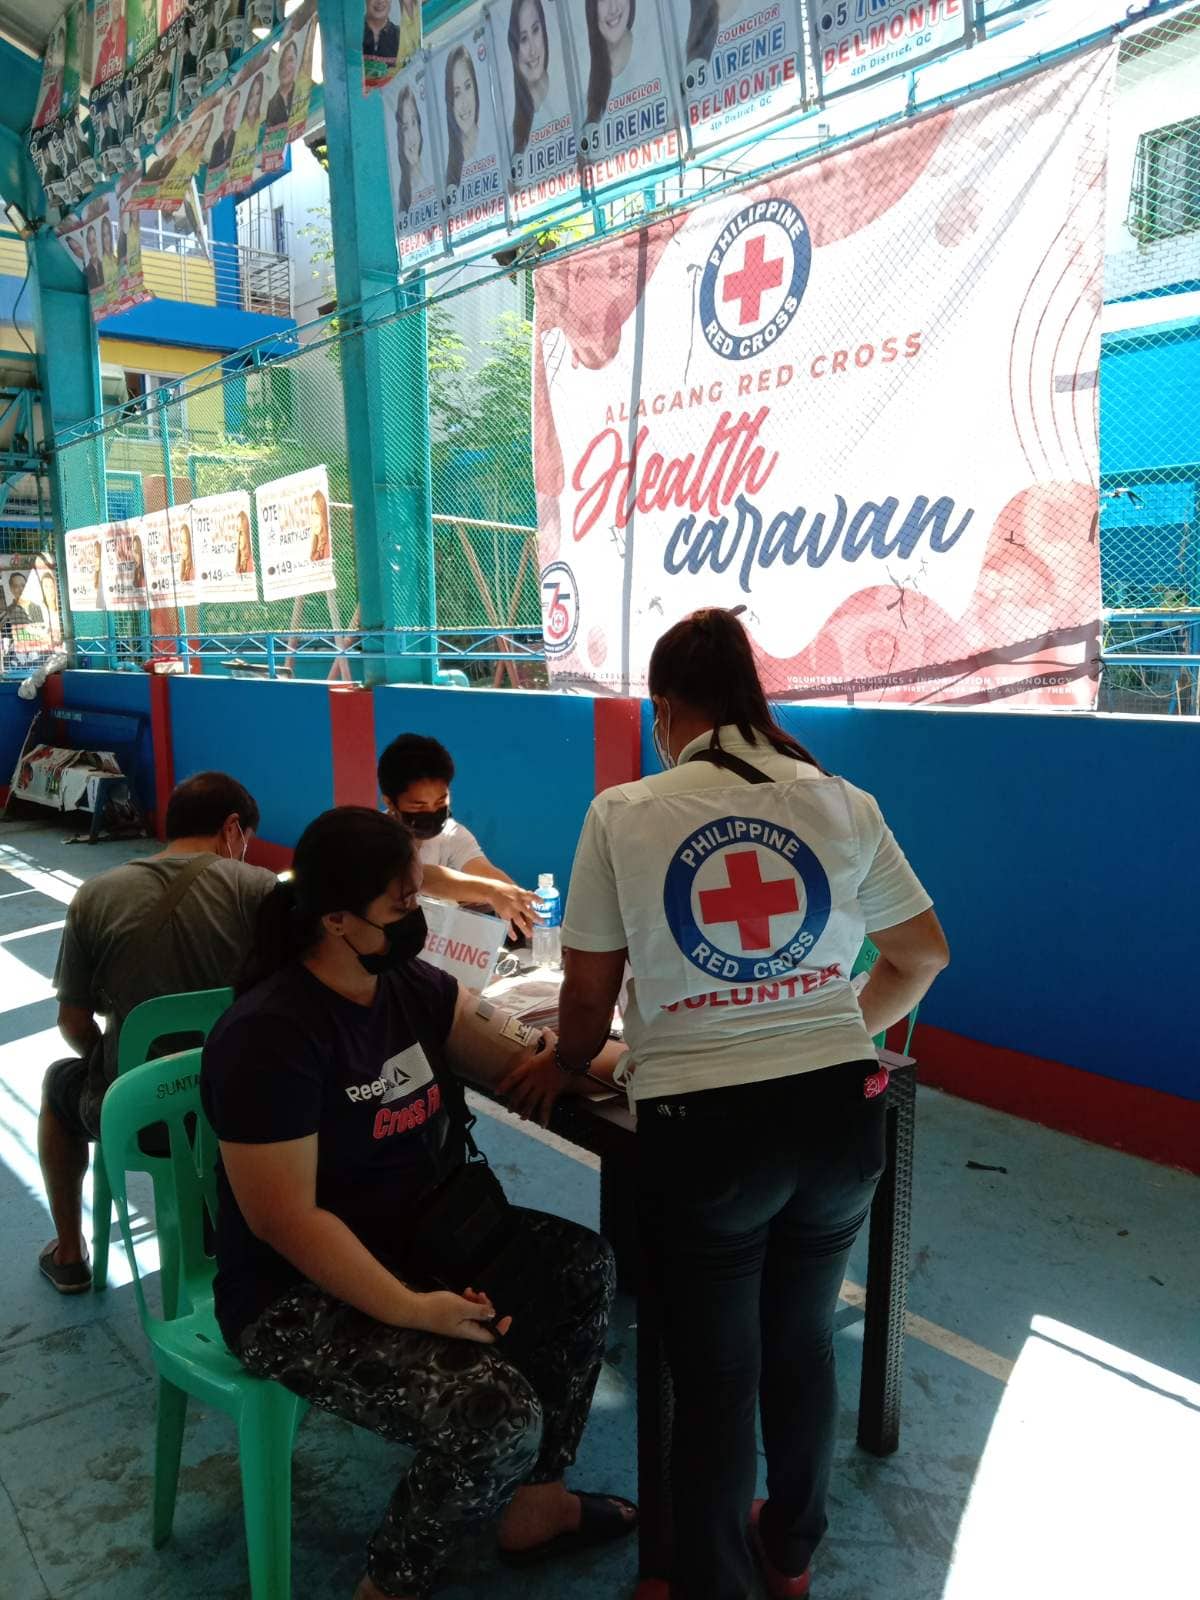 Philippine Red Cross Health Caravan